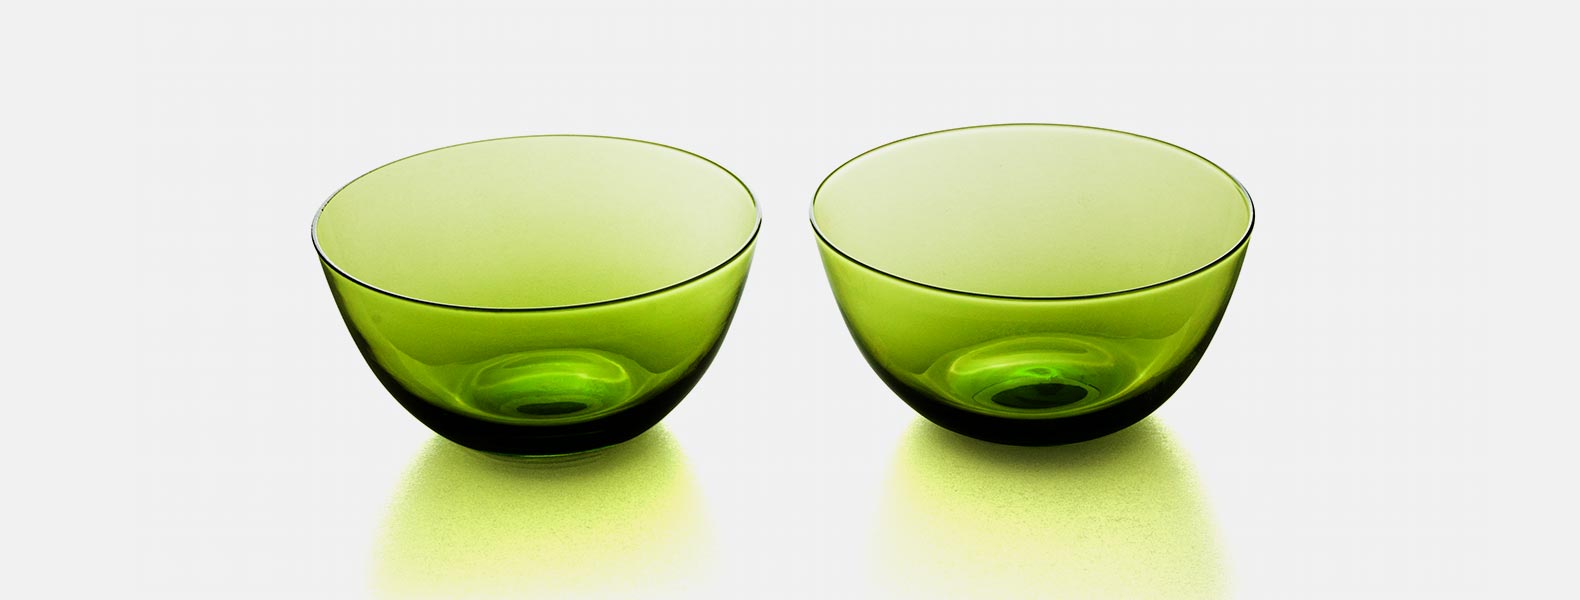 Kit contendo quatro tigelas em vidro de coloração verde e capacidade de 350ml cada.